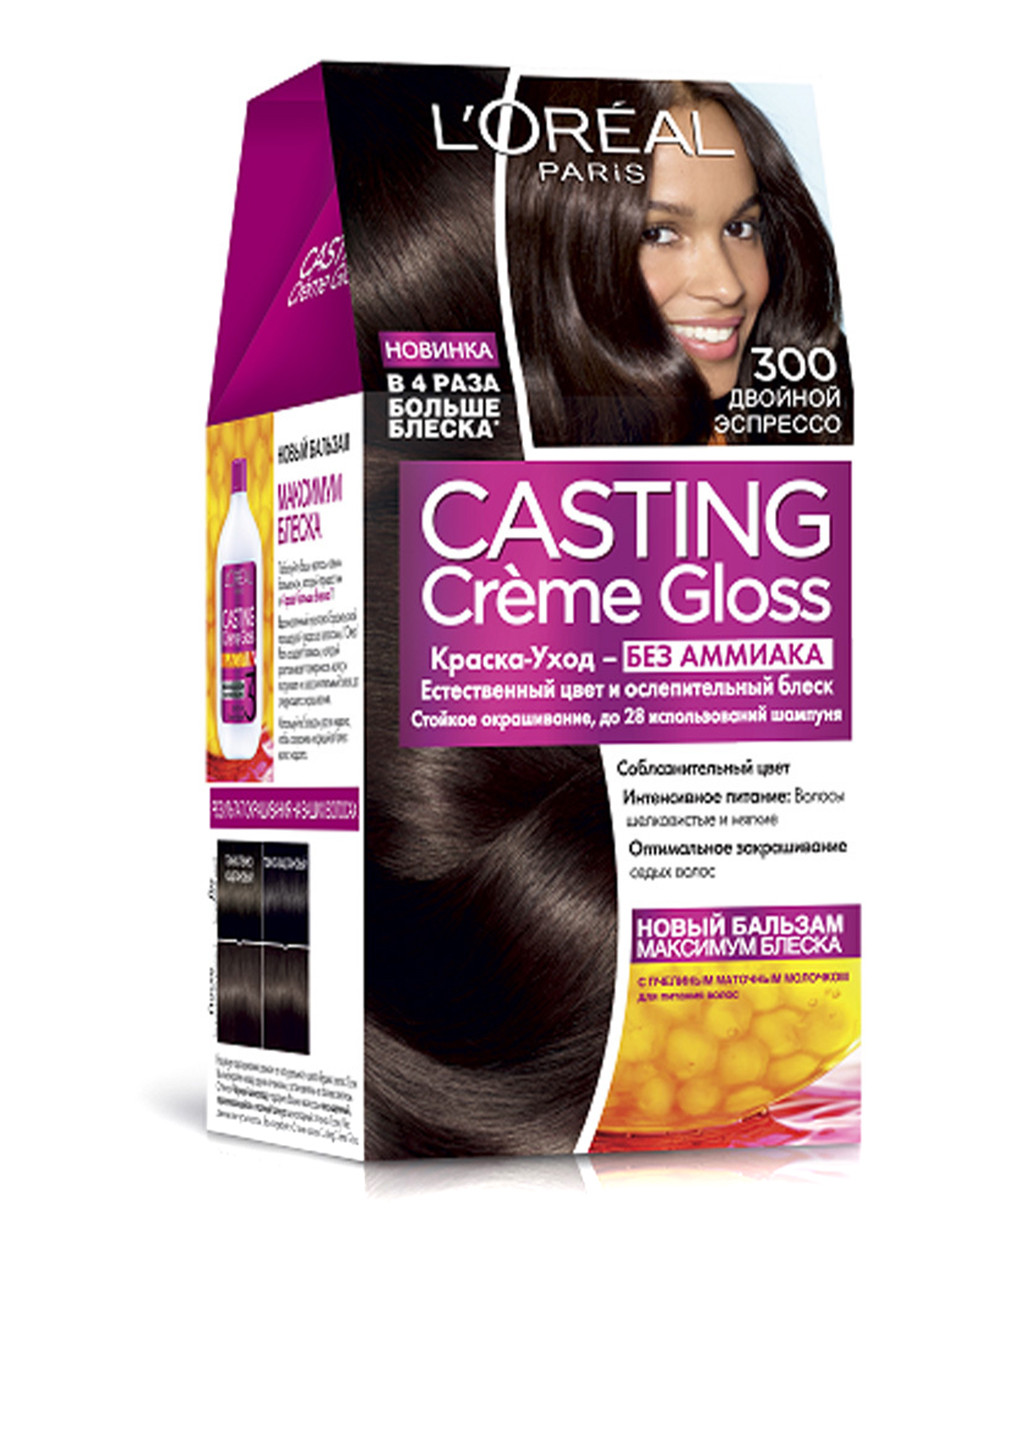 Краска для волос L'oreal Casting Creme Gloss 300 Двойной эспрессо L'Oreal Paris (88095649)